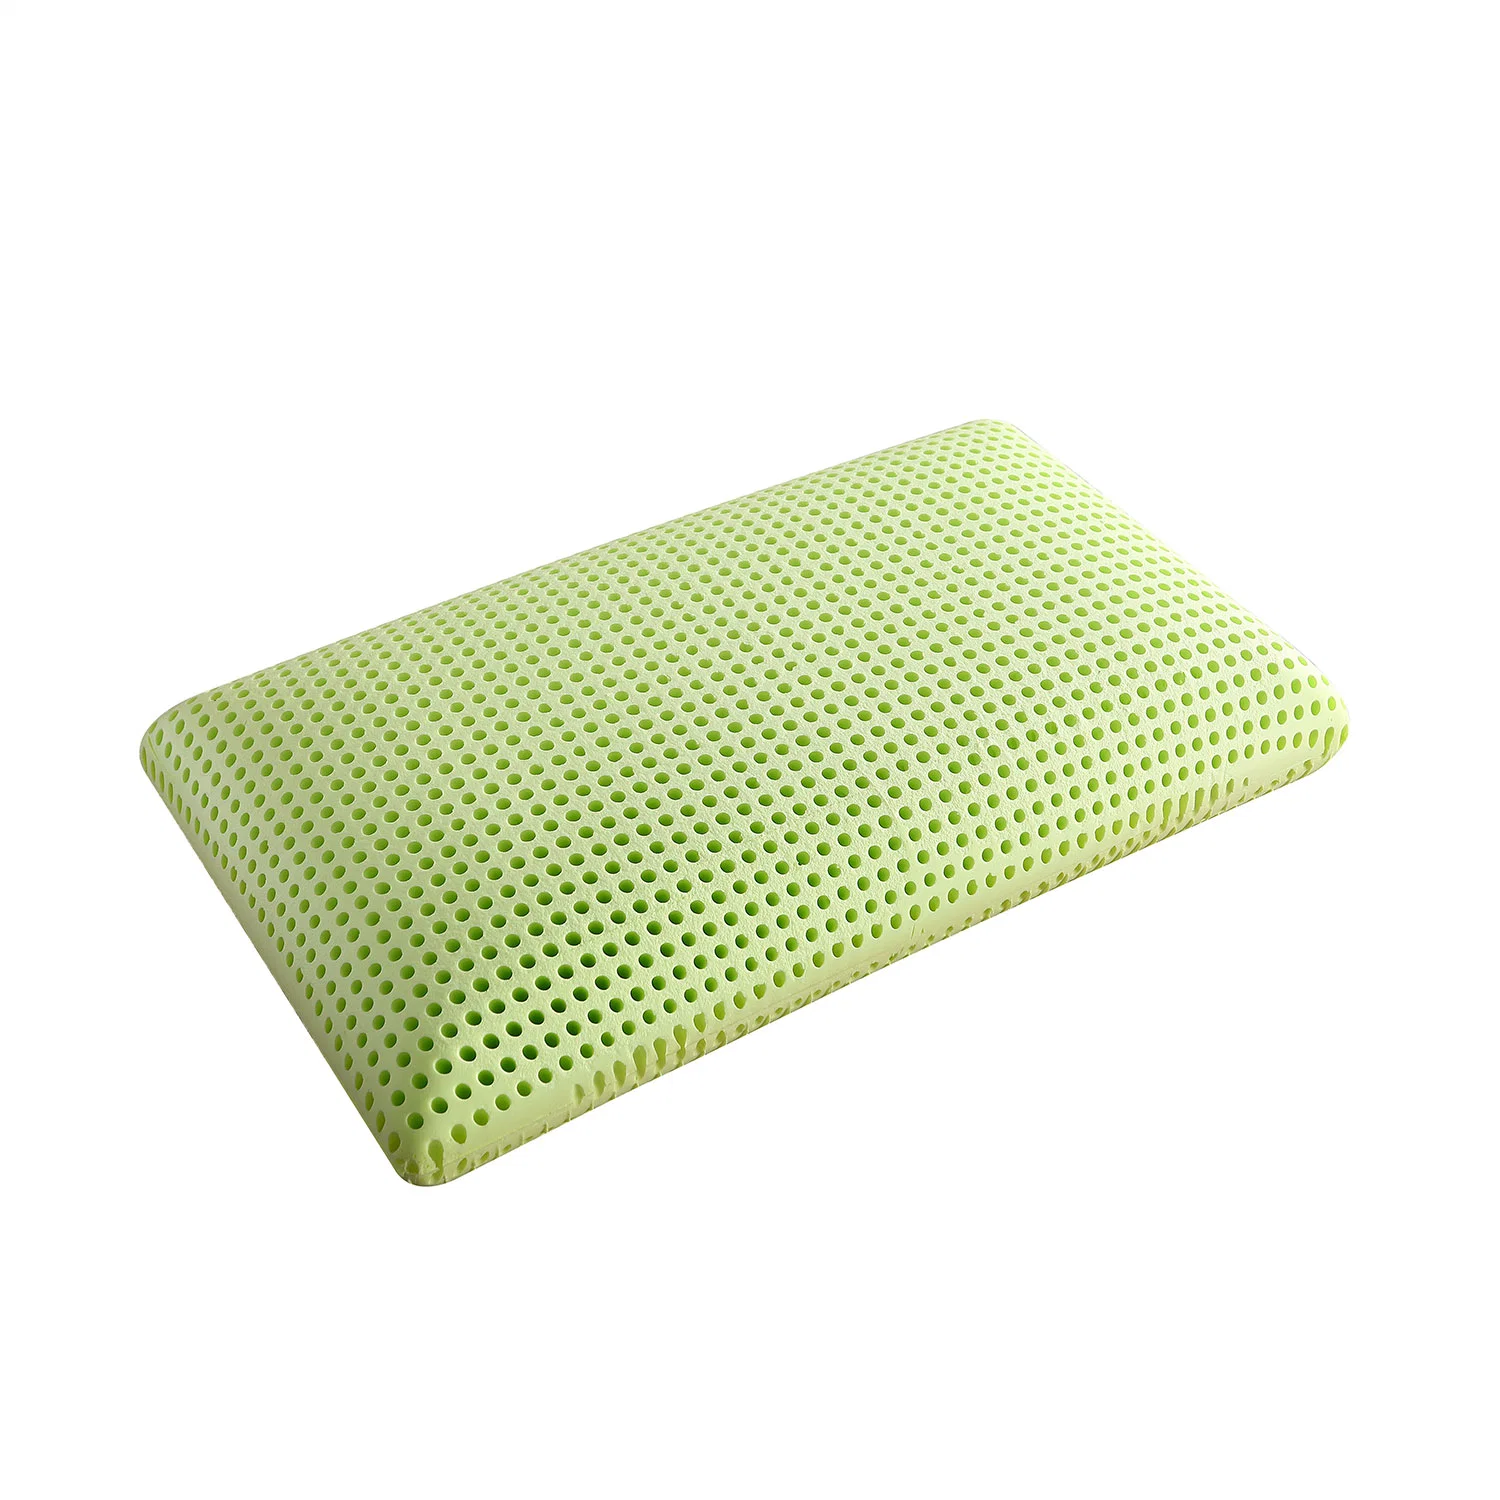 Venta caliente Skin-Friendly verde almohada de espuma de memoria con la madriguera